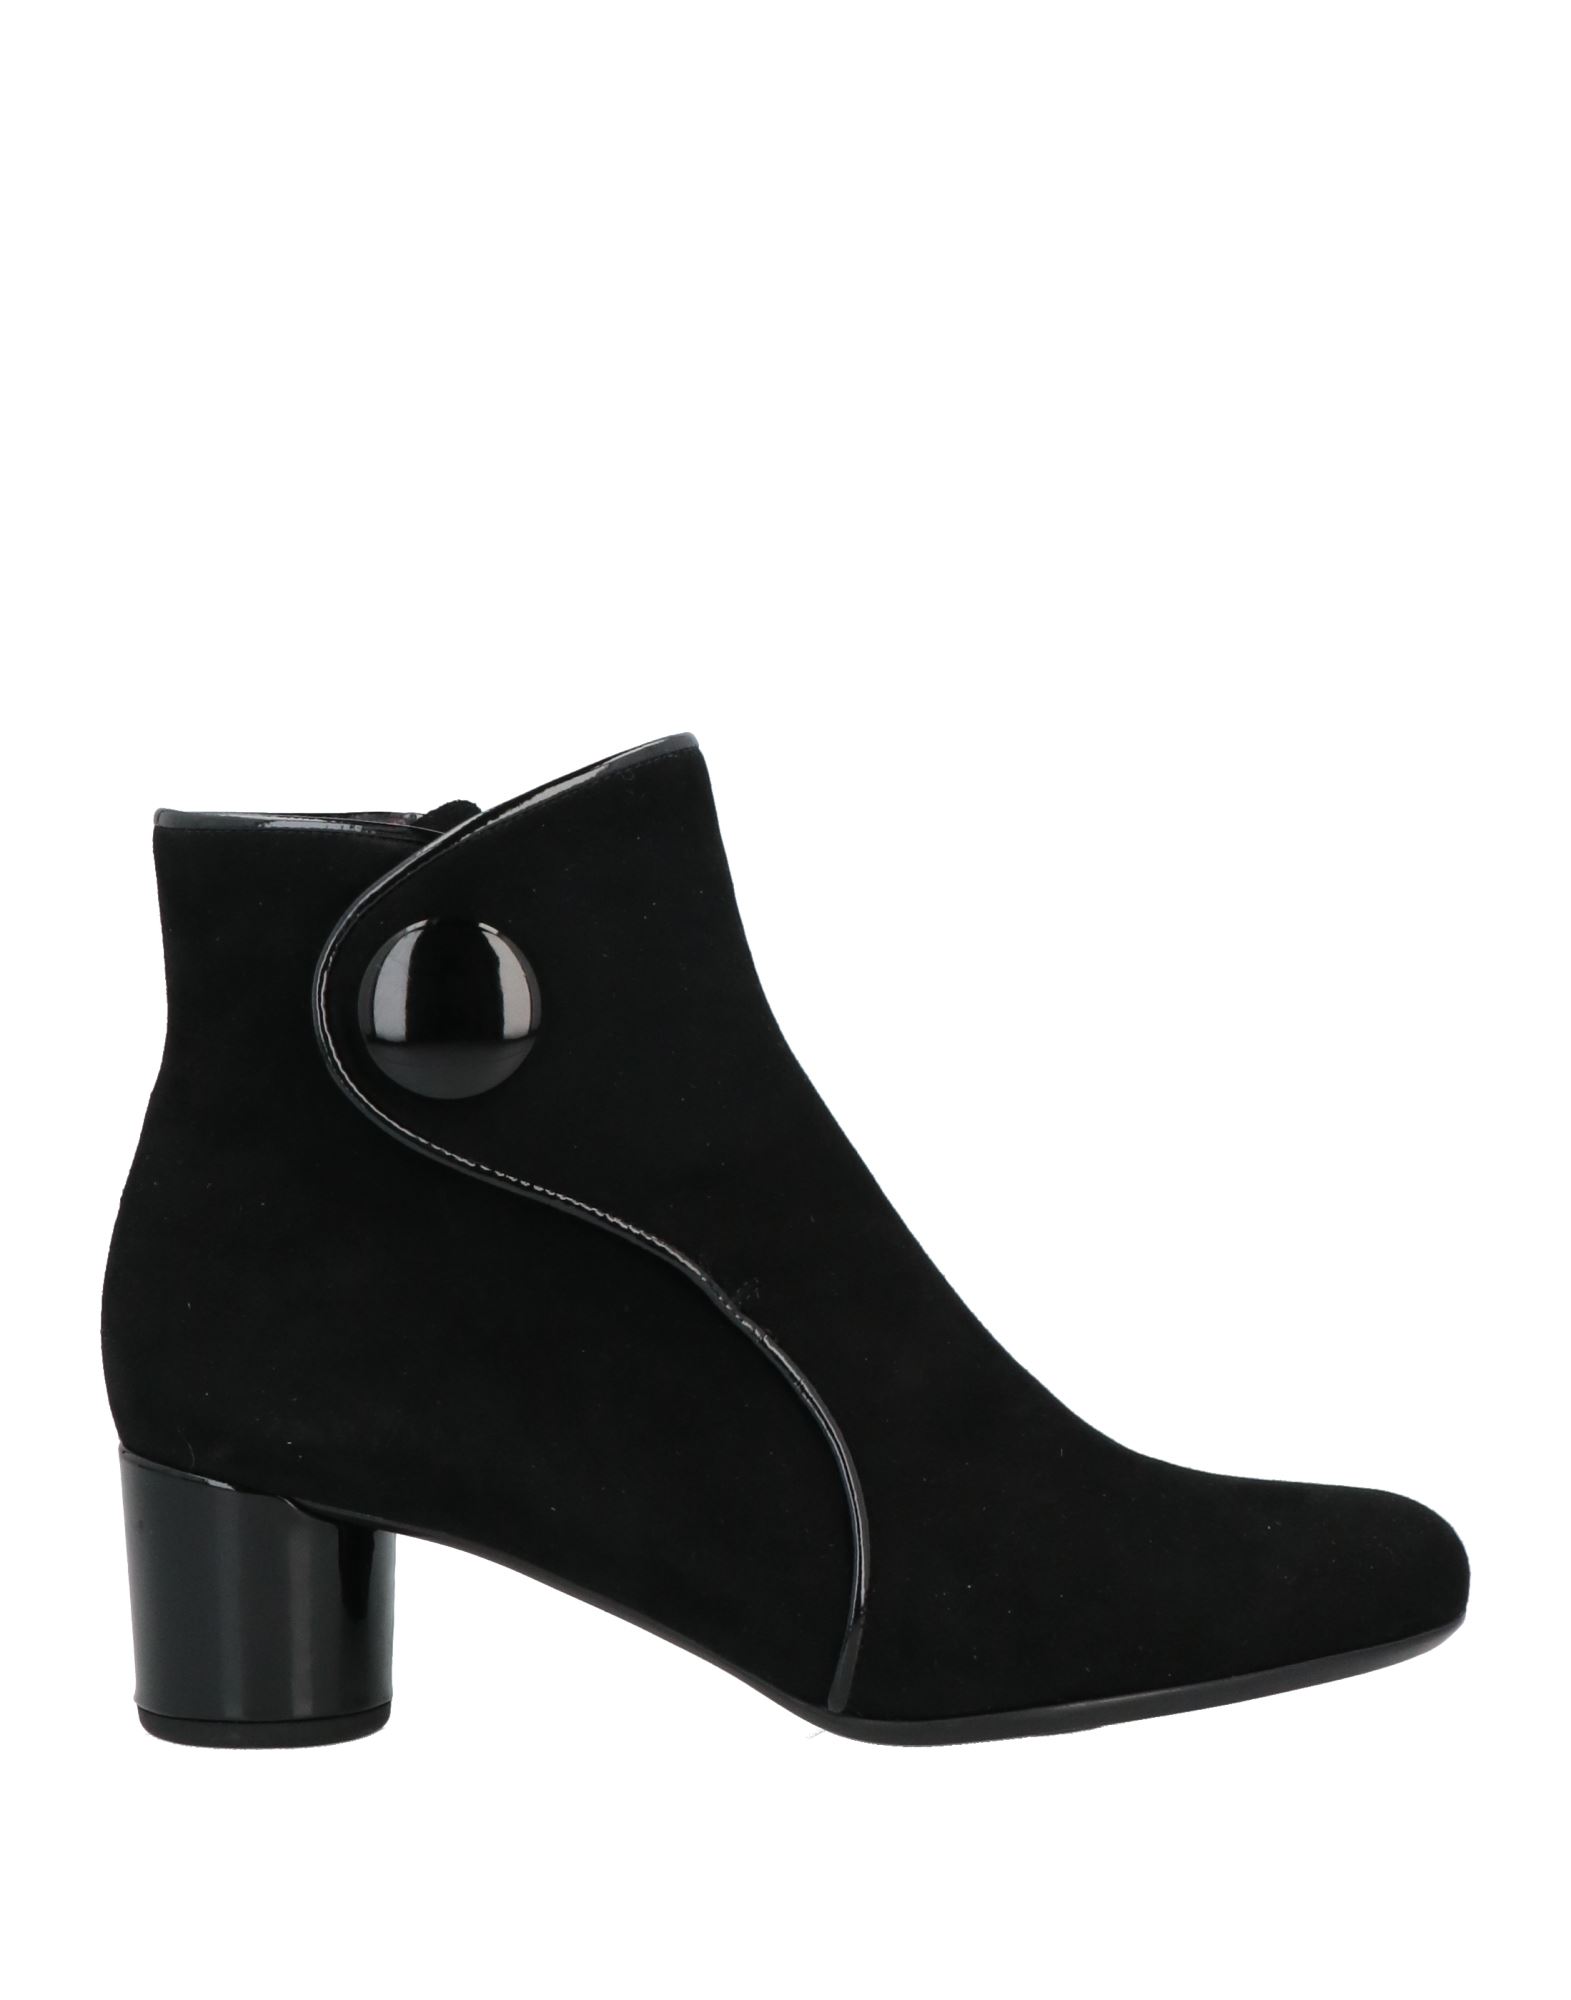 Shop Pas De Rouge Woman Ankle Boots Black Size 8 Soft Leather